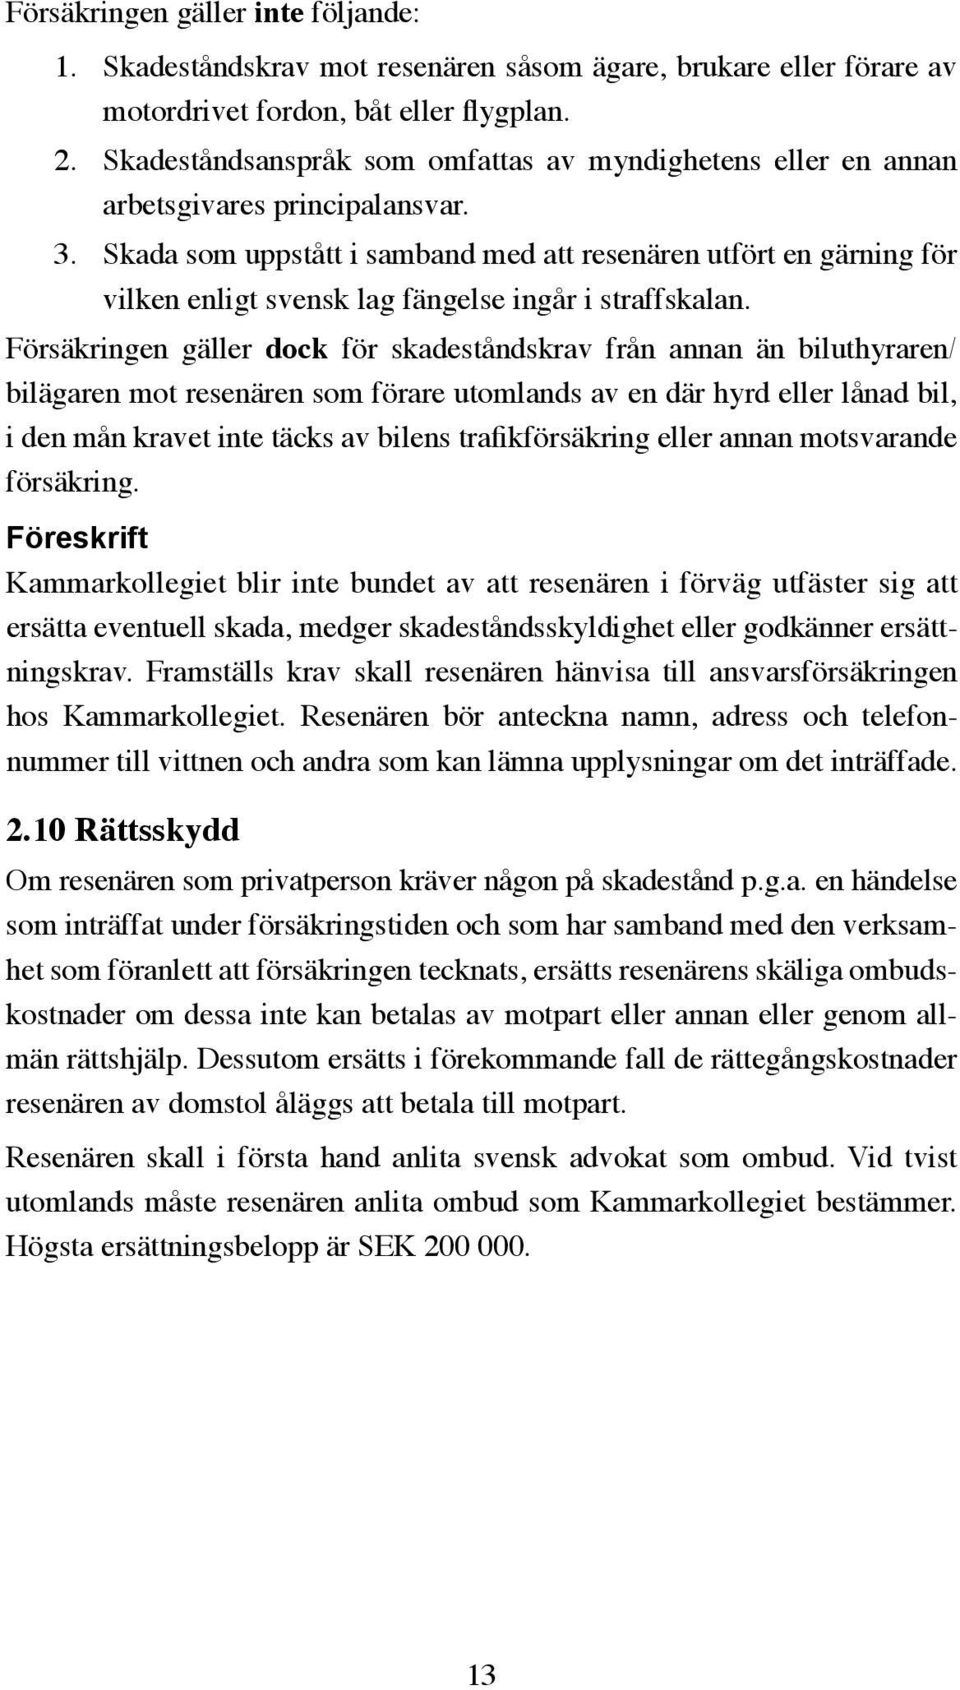 Skada som uppstått i samband med att resenären utfört en gärning för vilken enligt svensk lag fängelse ingår i straffskalan.